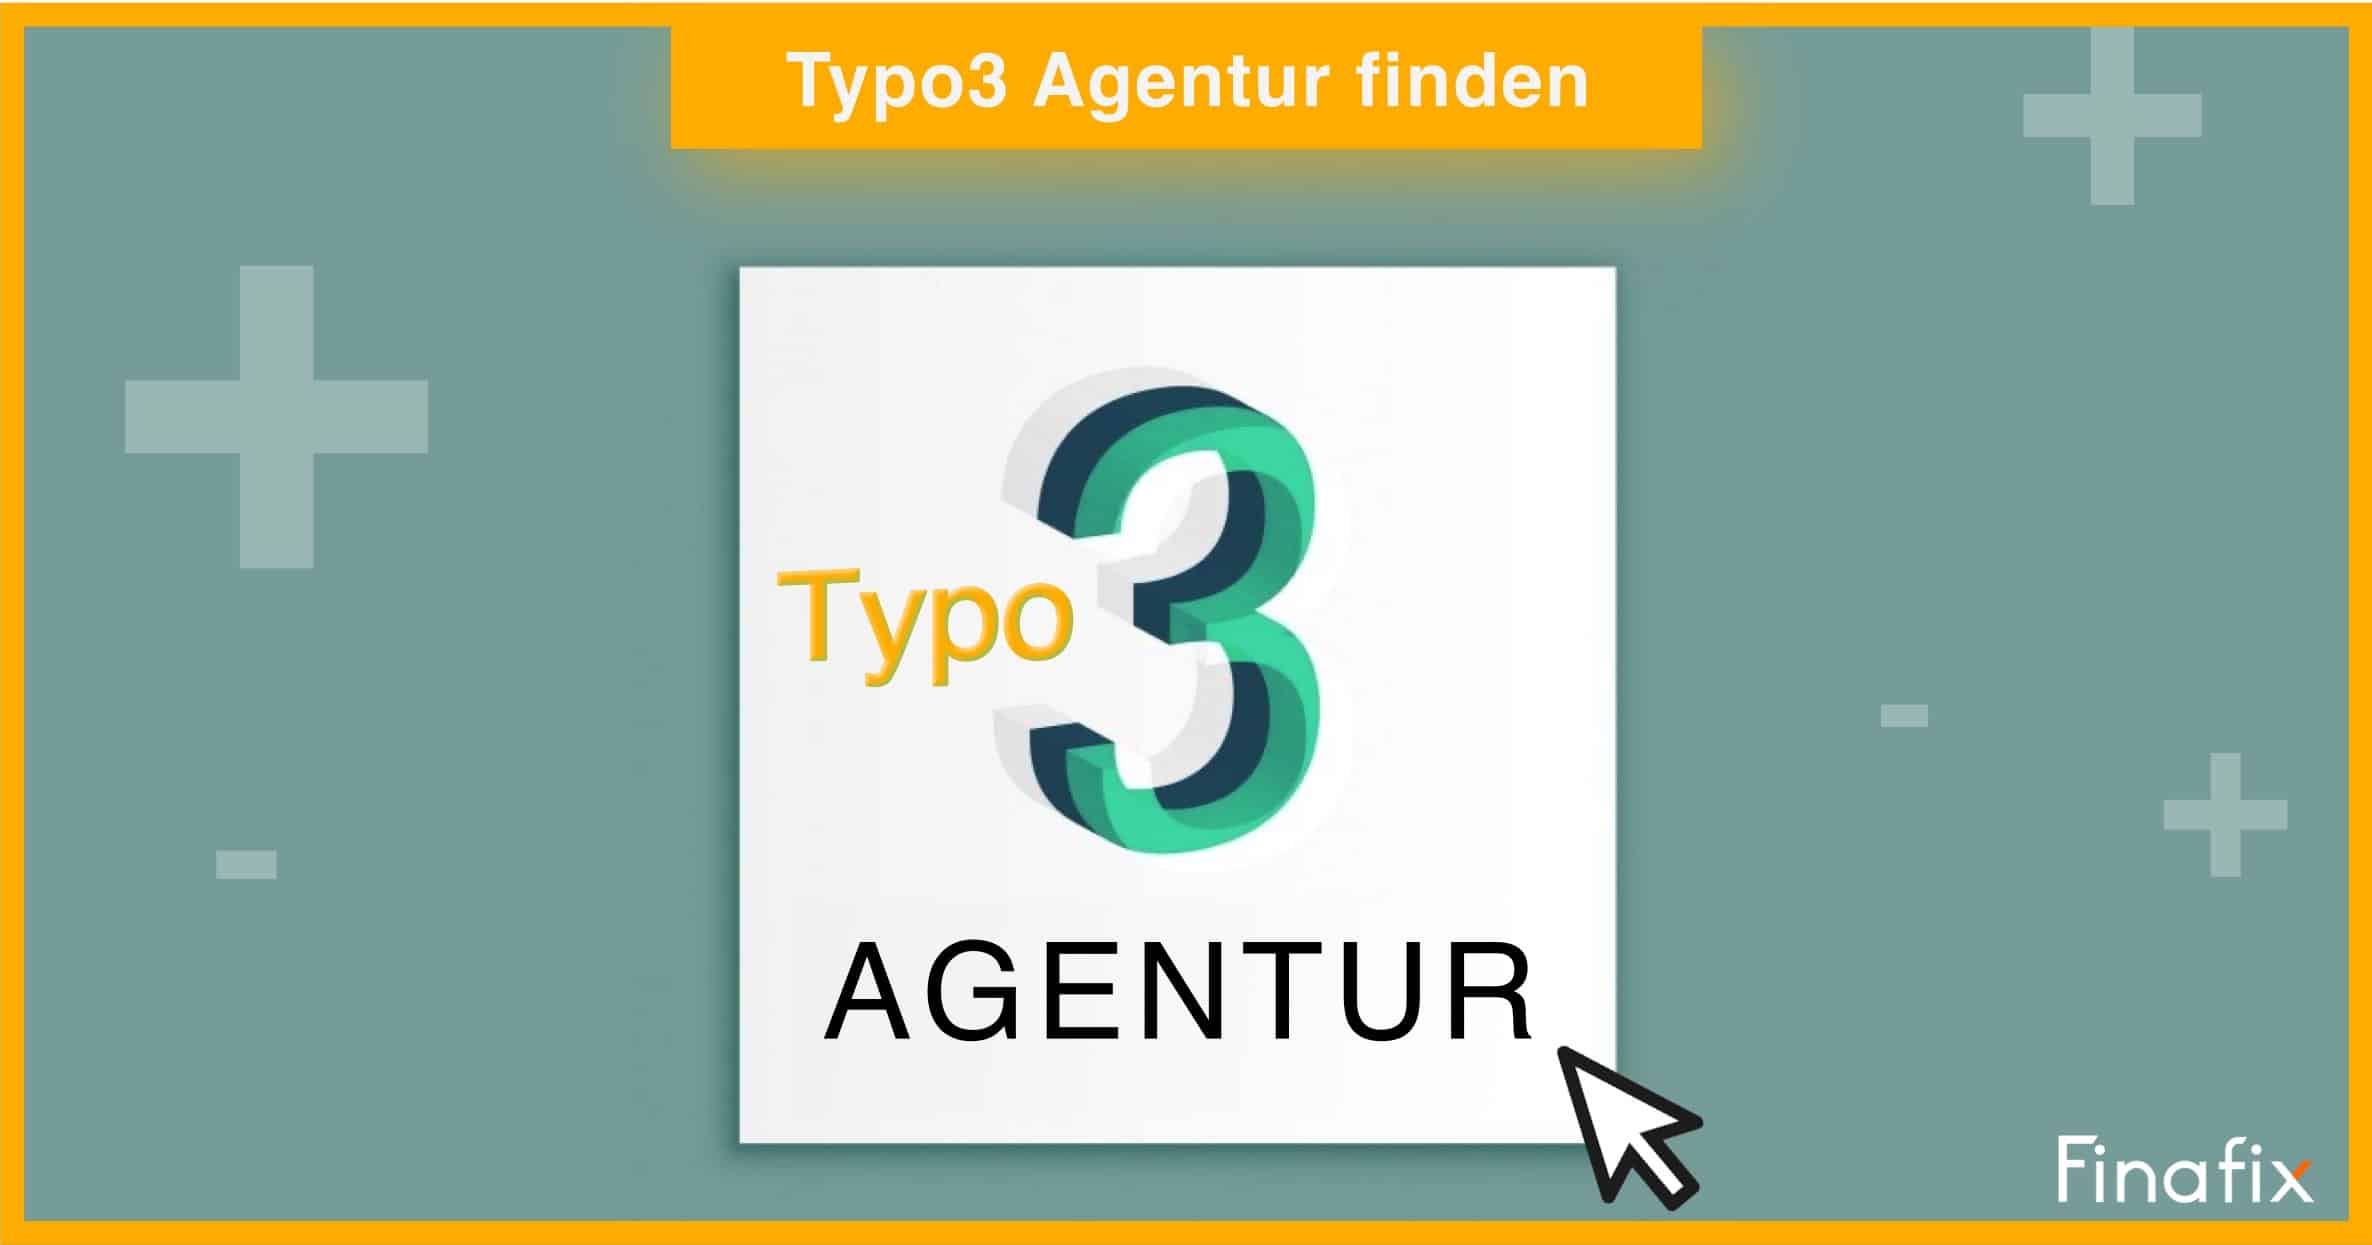 Typo3 Agentur finden